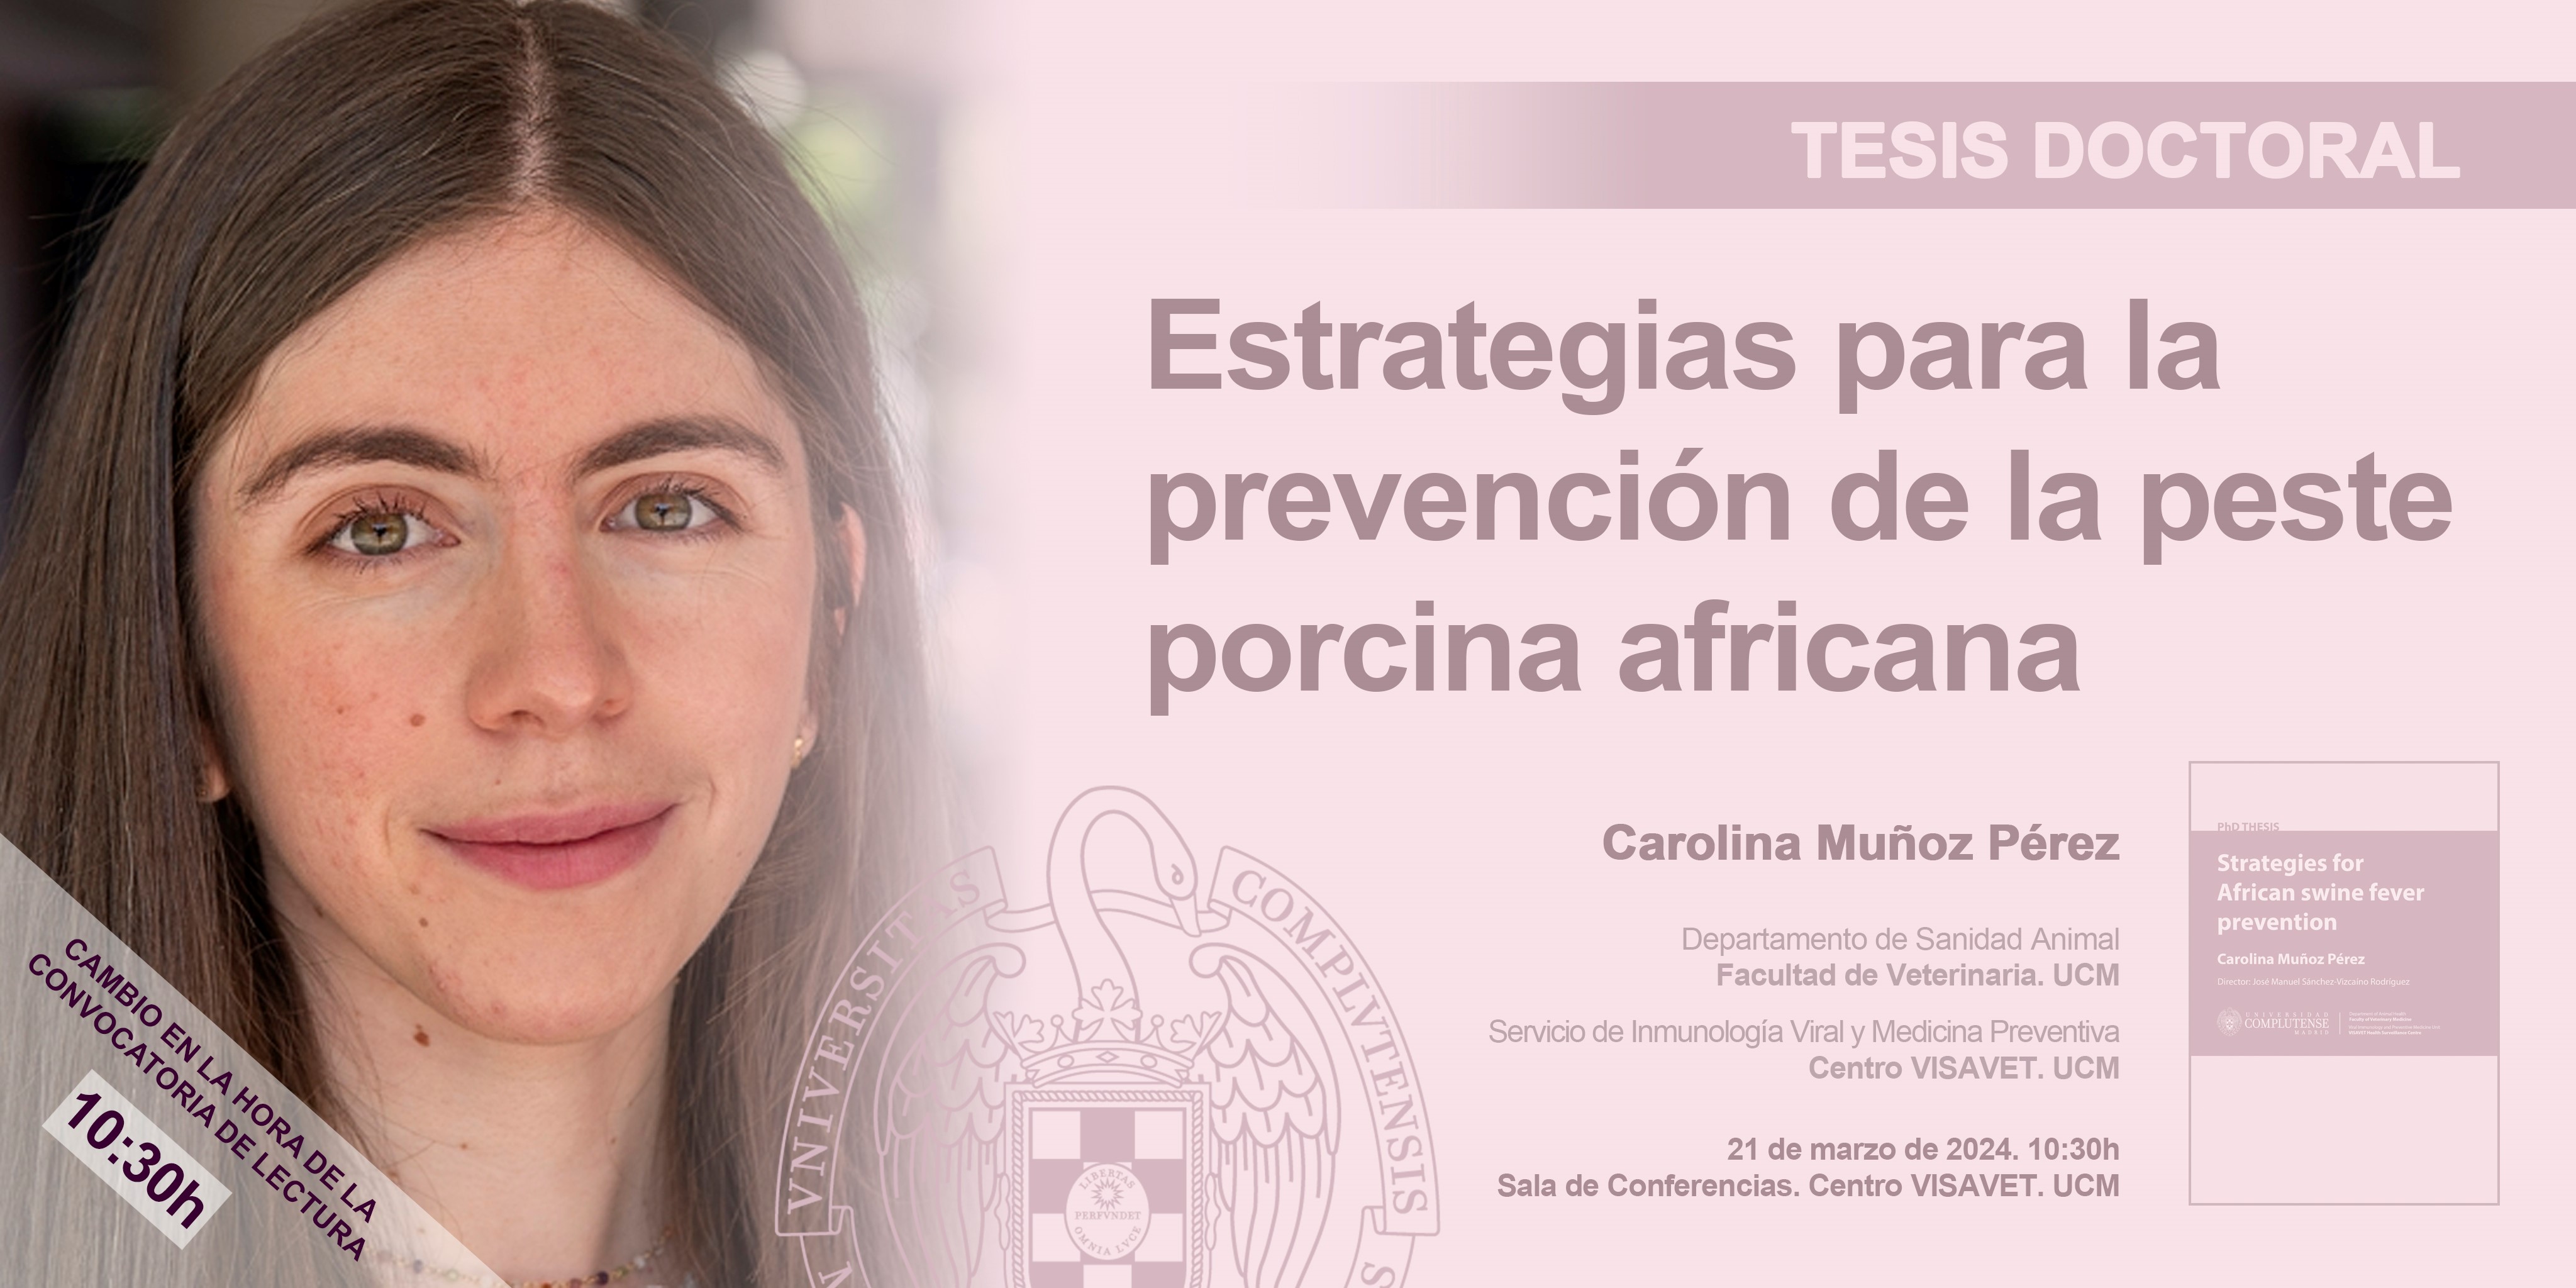 No te pierdas la defensa de la tesis doctoral "Estrategias para la prevención de la peste porcina africana" el 21 de marzo